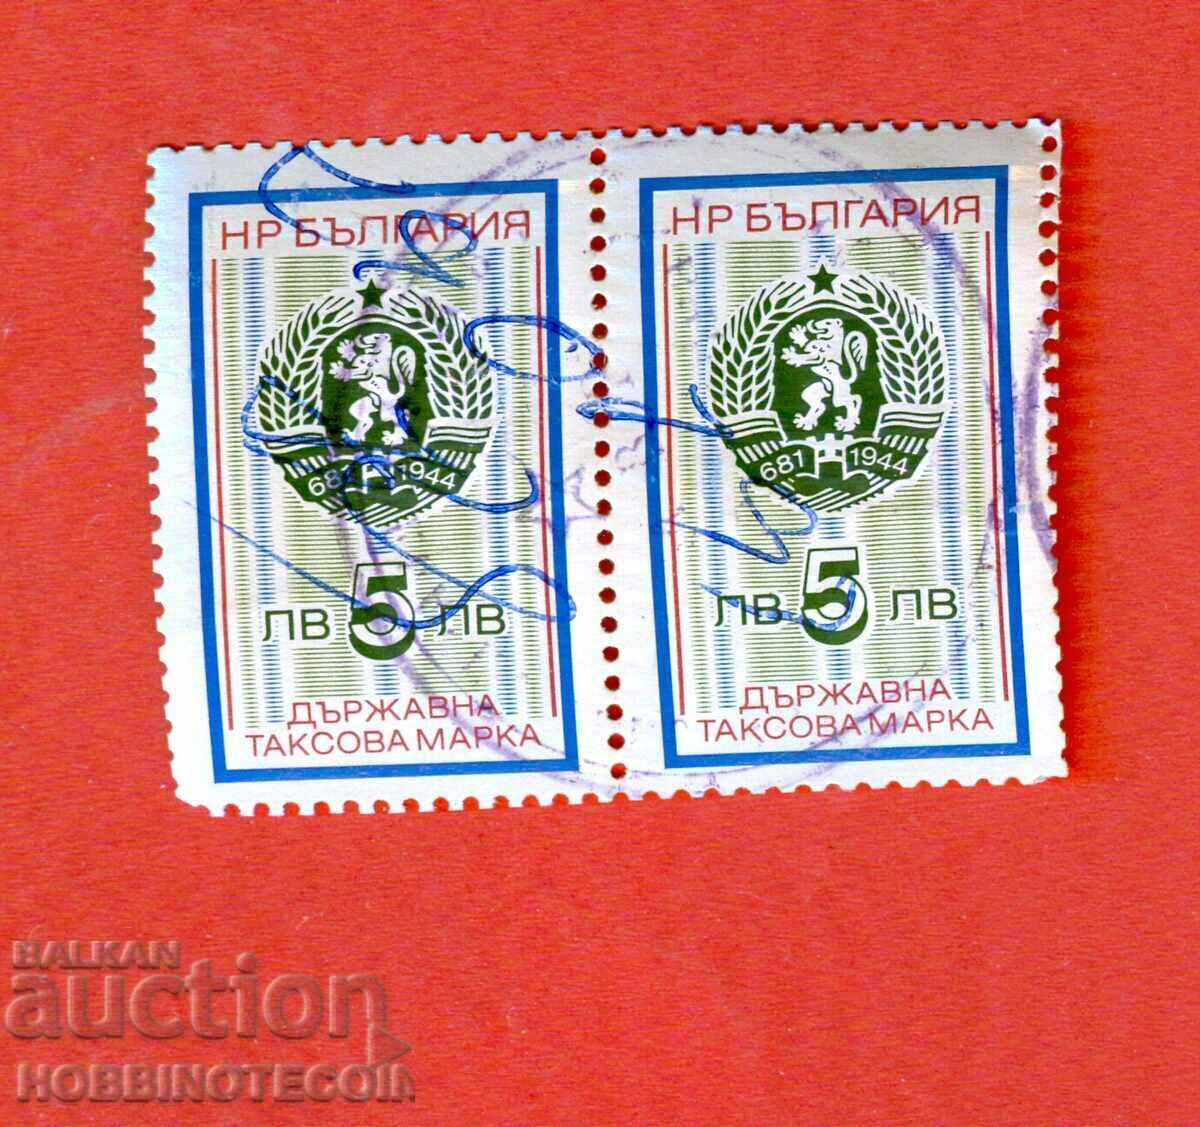 R BULGARIA TAX STAMPS tax stamp 1993 - 2 x 5 BGN